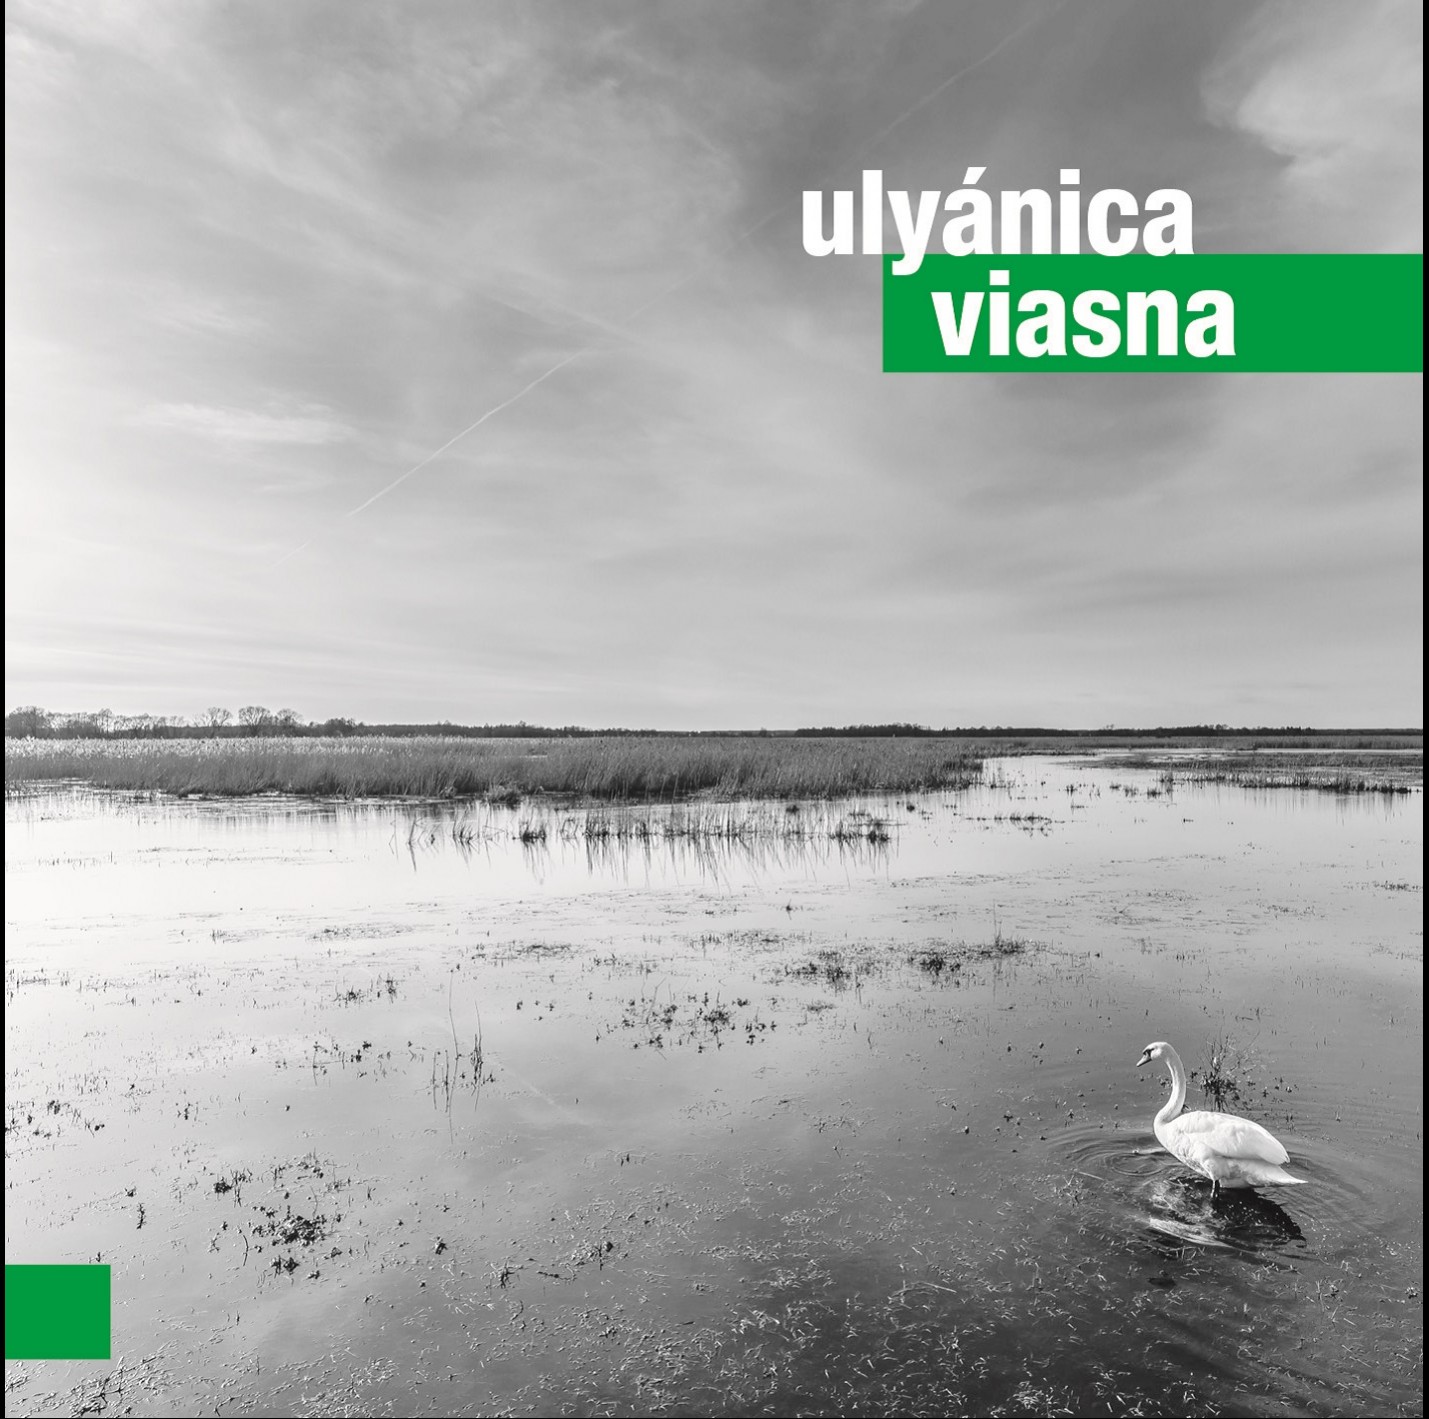 Ulyánica - Viasna